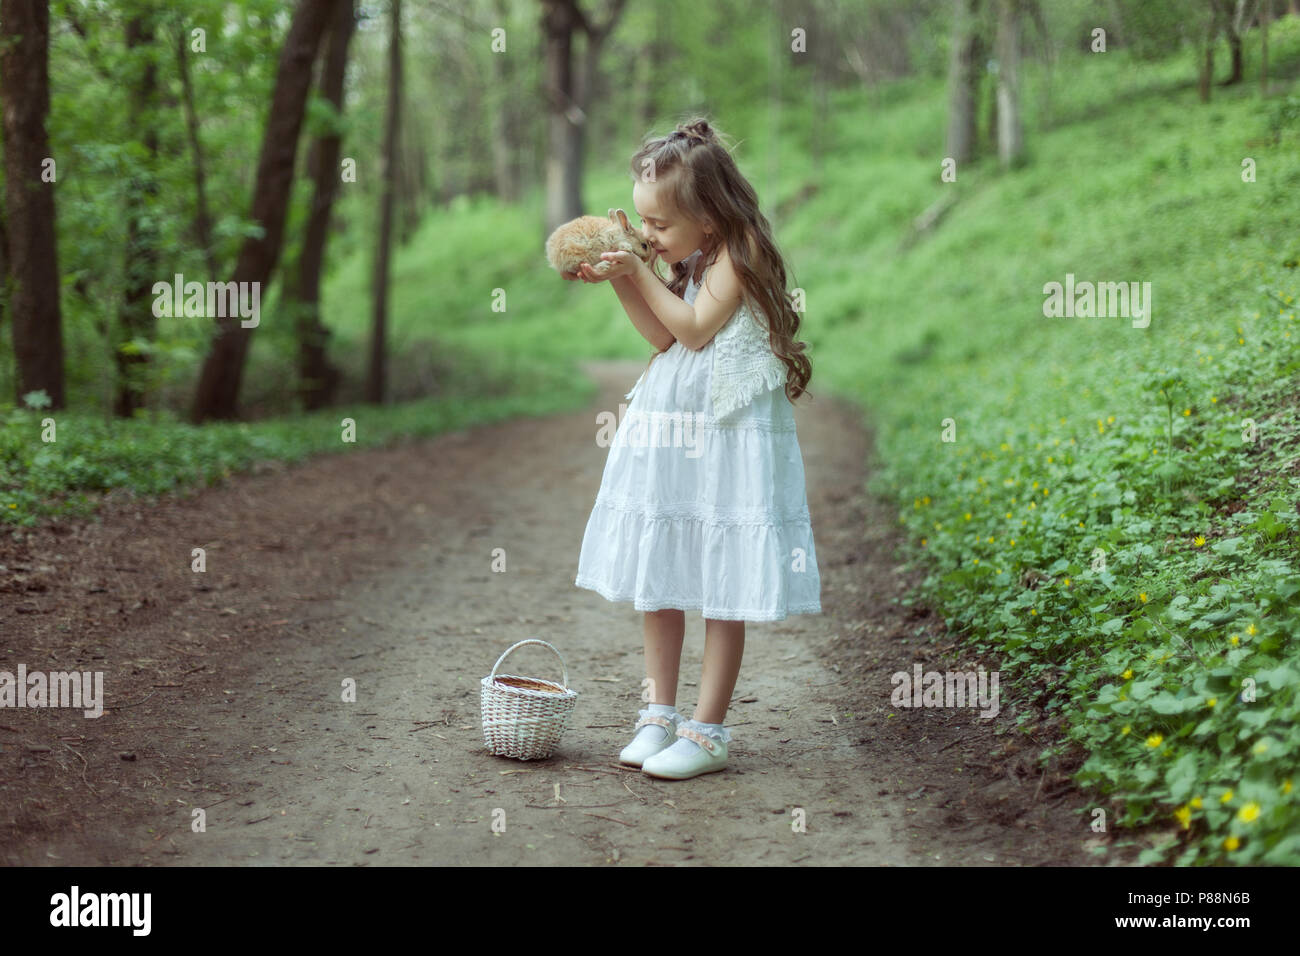 Porträt eines kleinen Mädchens im Wald. Sie hält ein kleines Kaninchen in ihren Händen. Stockfoto